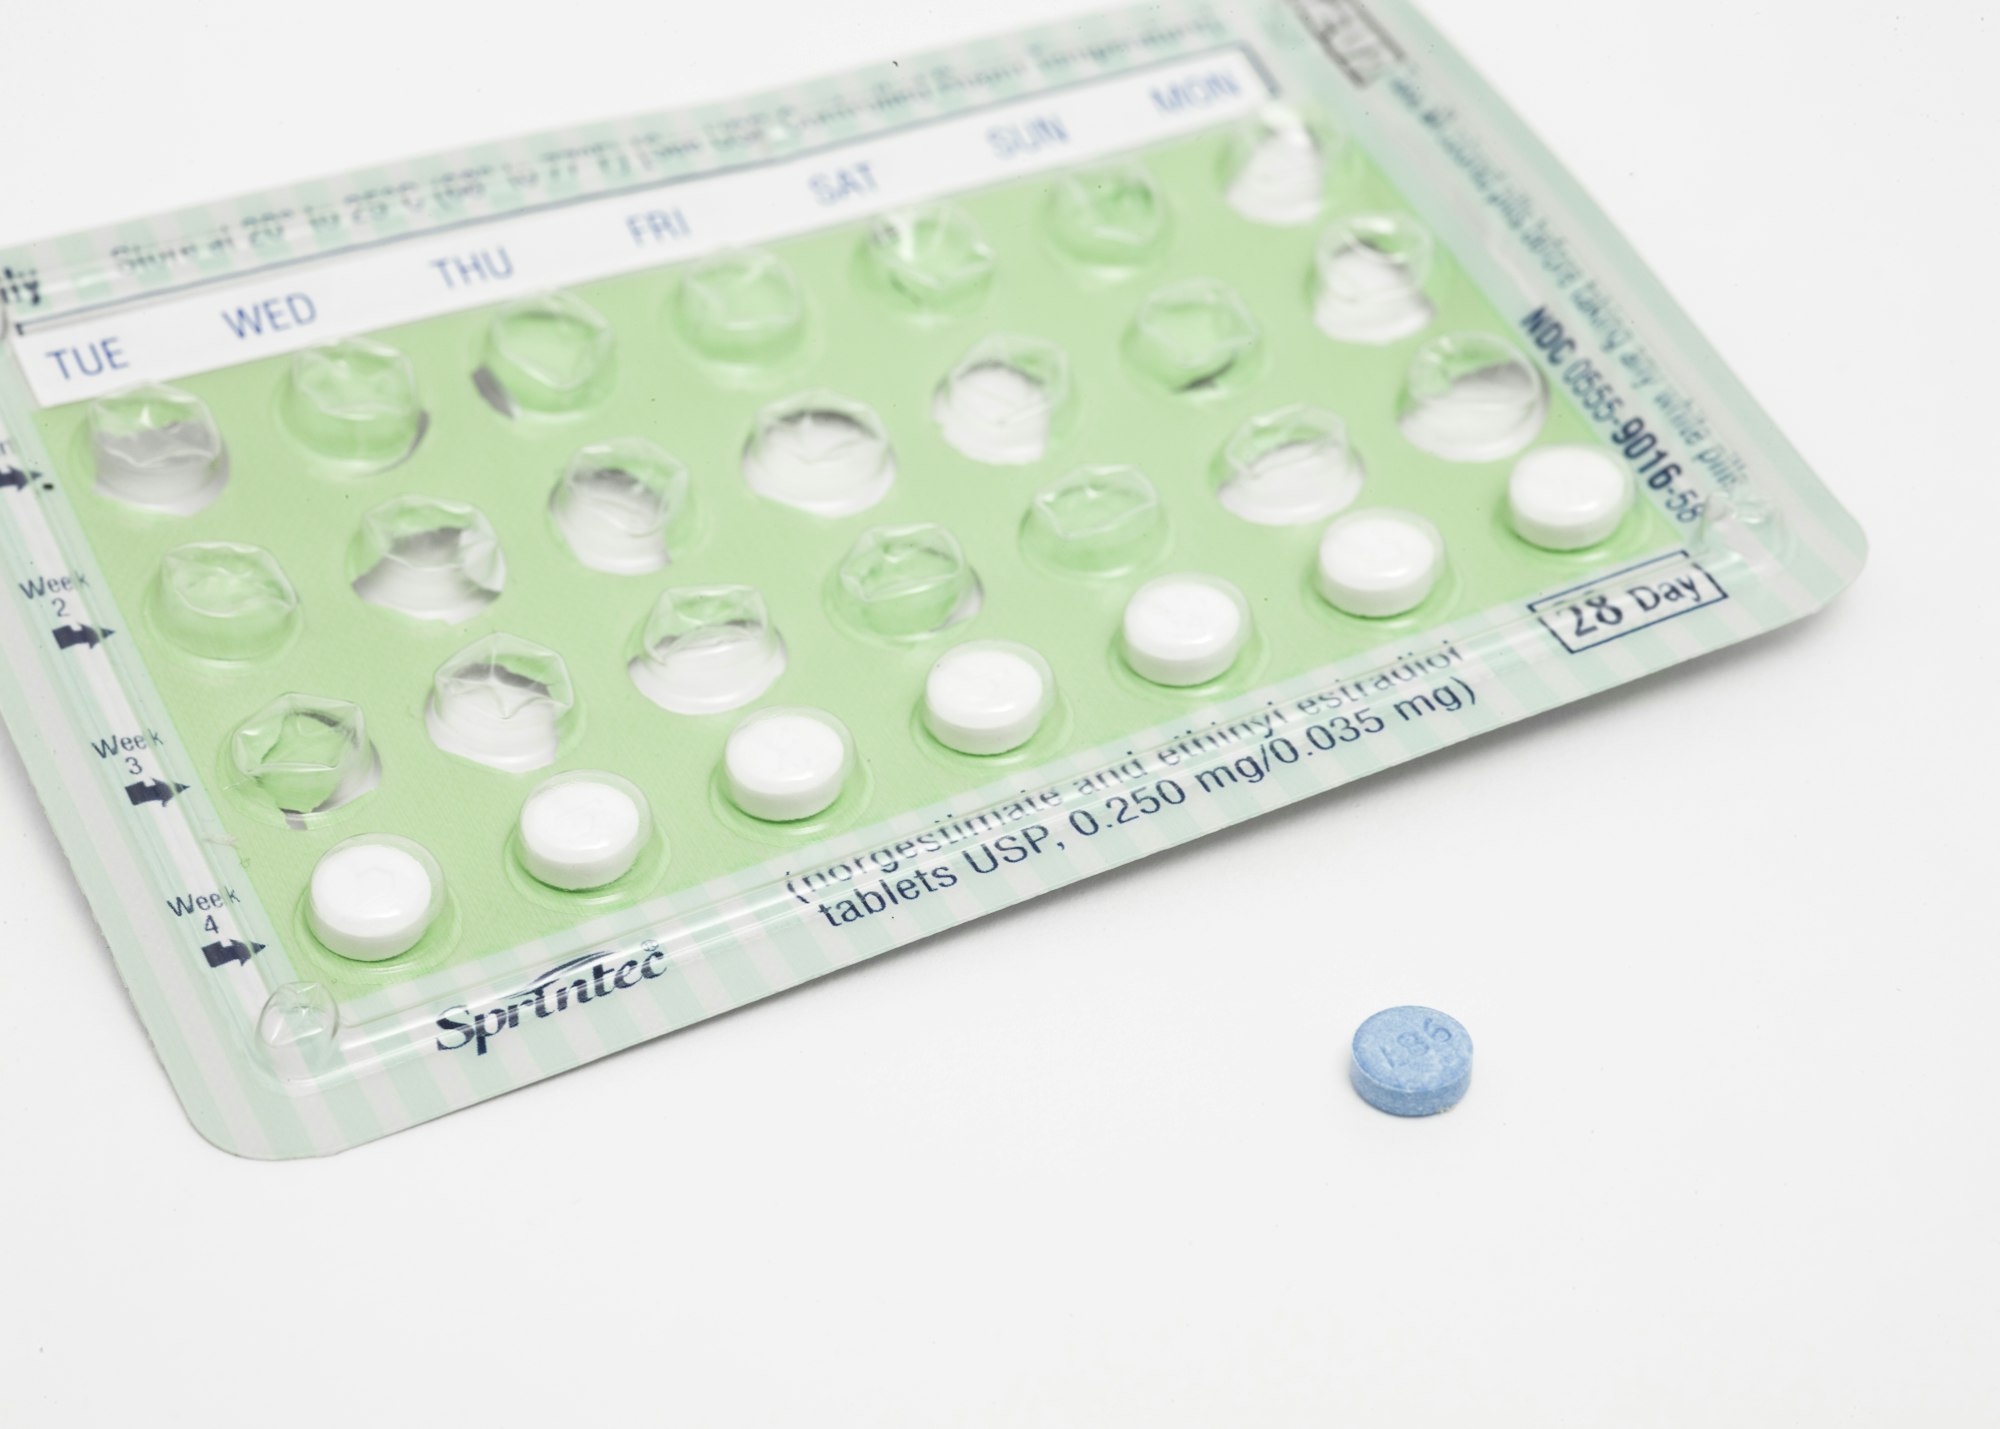 La píldora anticonceptiva para hombres iniciará ensayos en humanos este año.